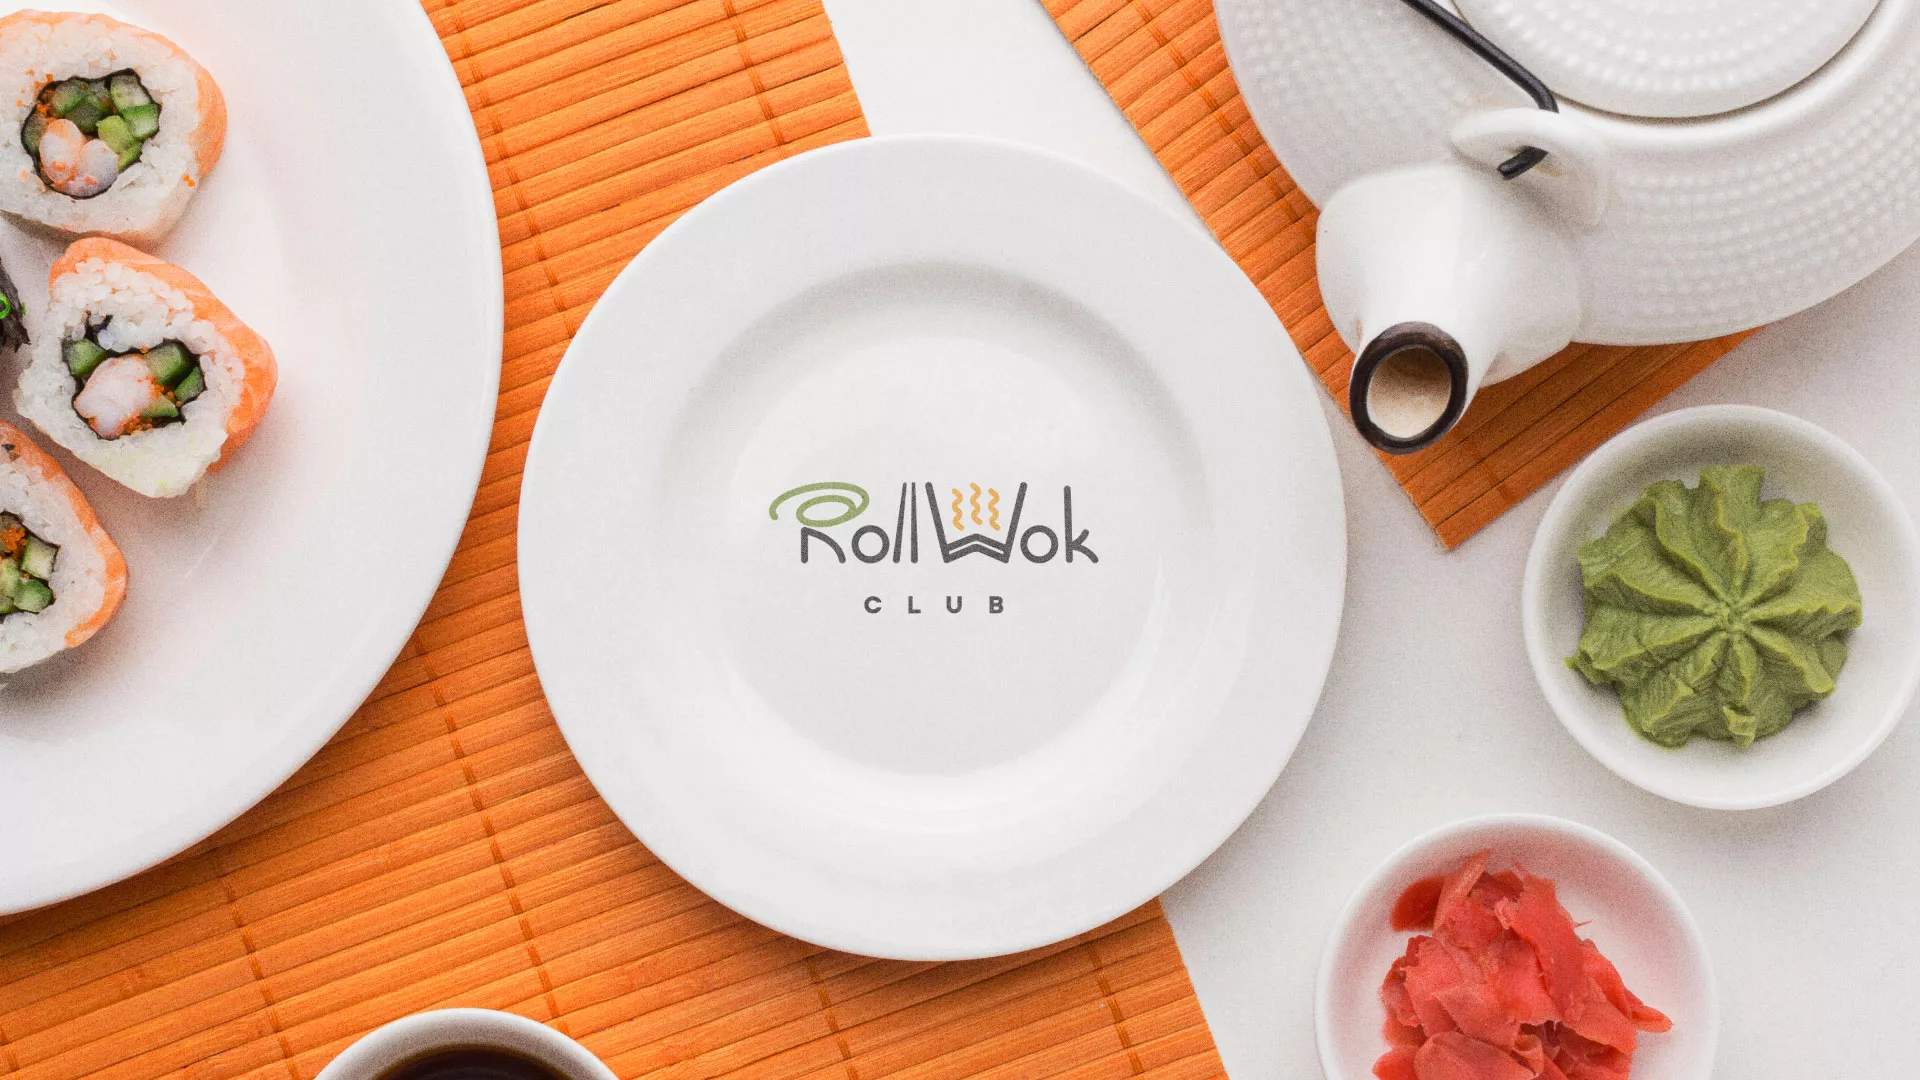 Разработка логотипа и фирменного стиля суши-бара «Roll Wok Club» в Энгельсе